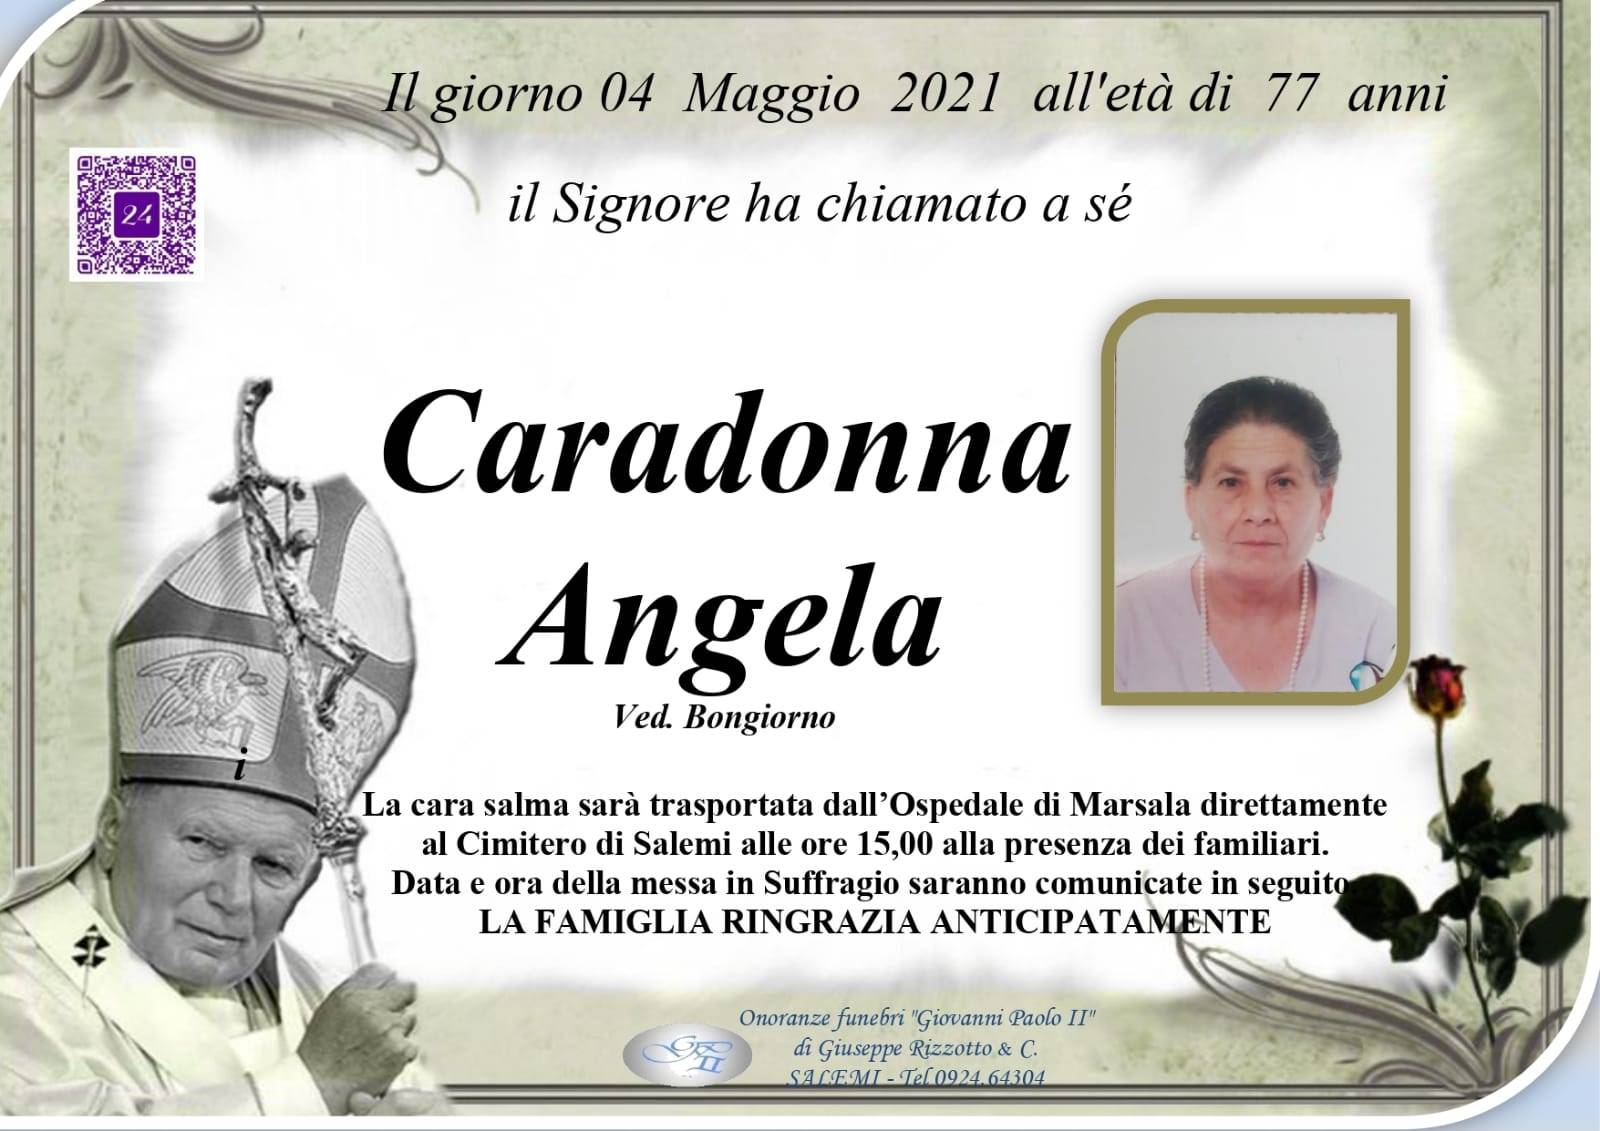 Angela Caradonna